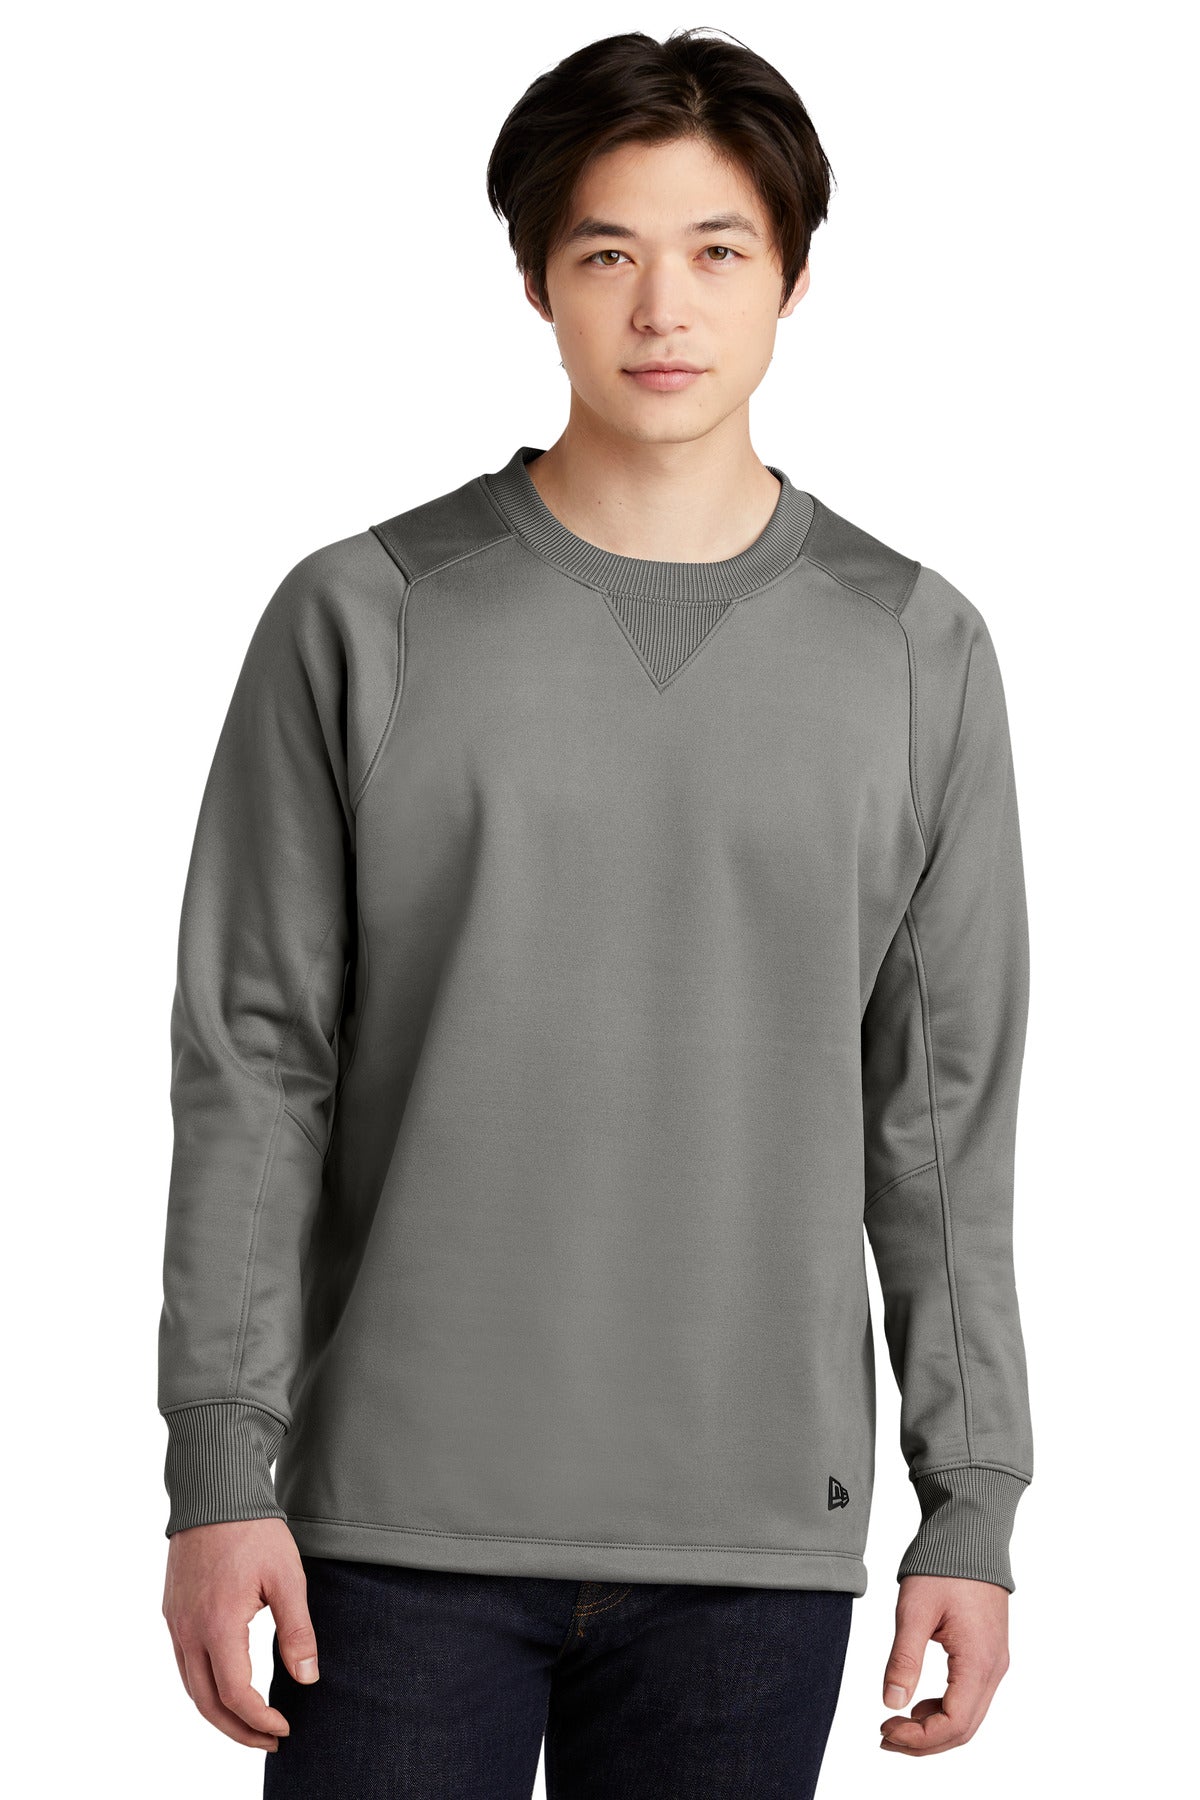 Sweatshirts/Fleece New Era